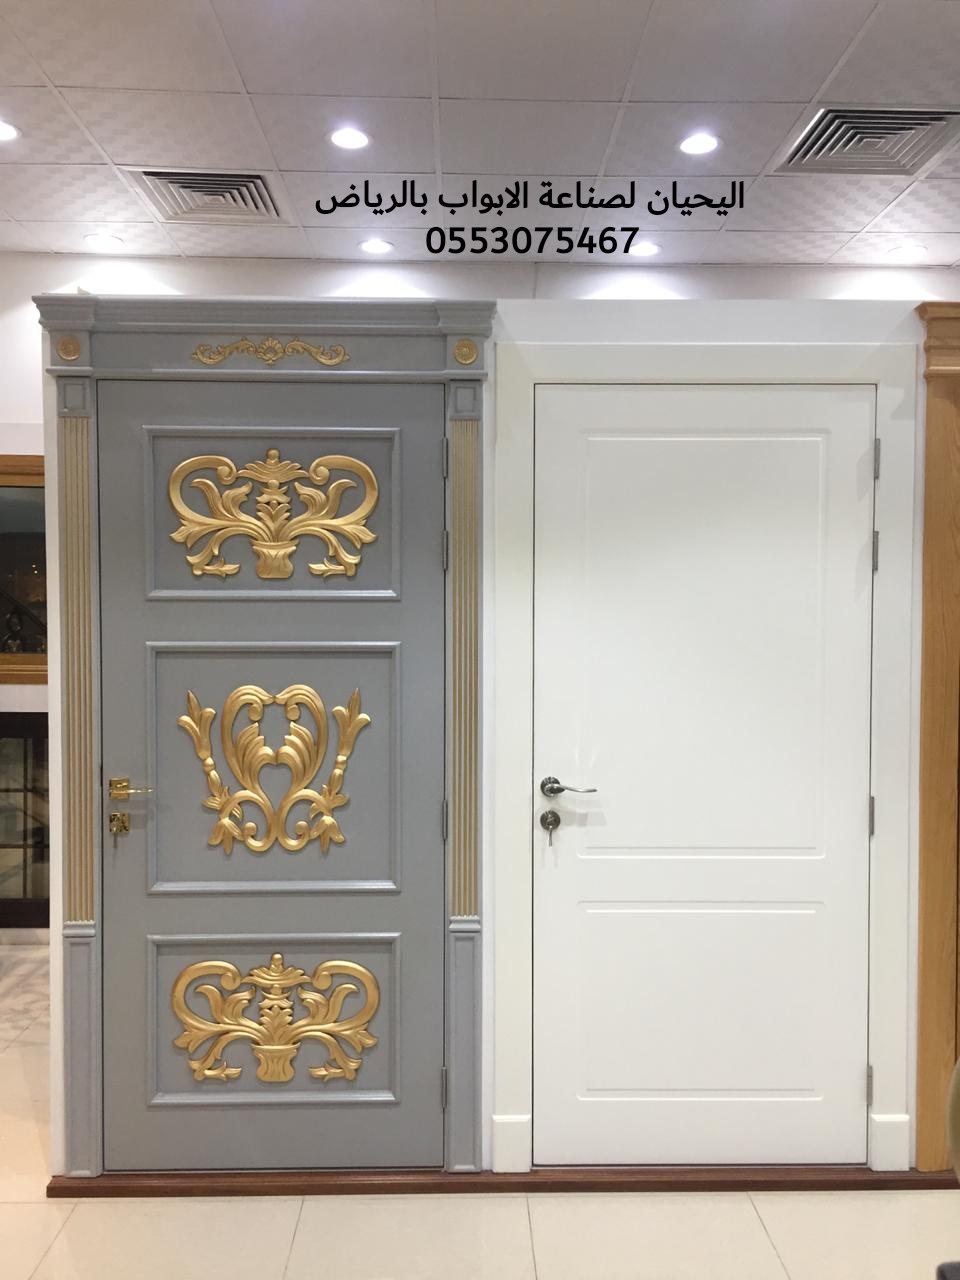 اليحيان مصنع أبواب خشبيه وحديديه والمنيوم في الرياض 0553075467 أبواب خشب خارجيه بالرياض P_15509l7hc6